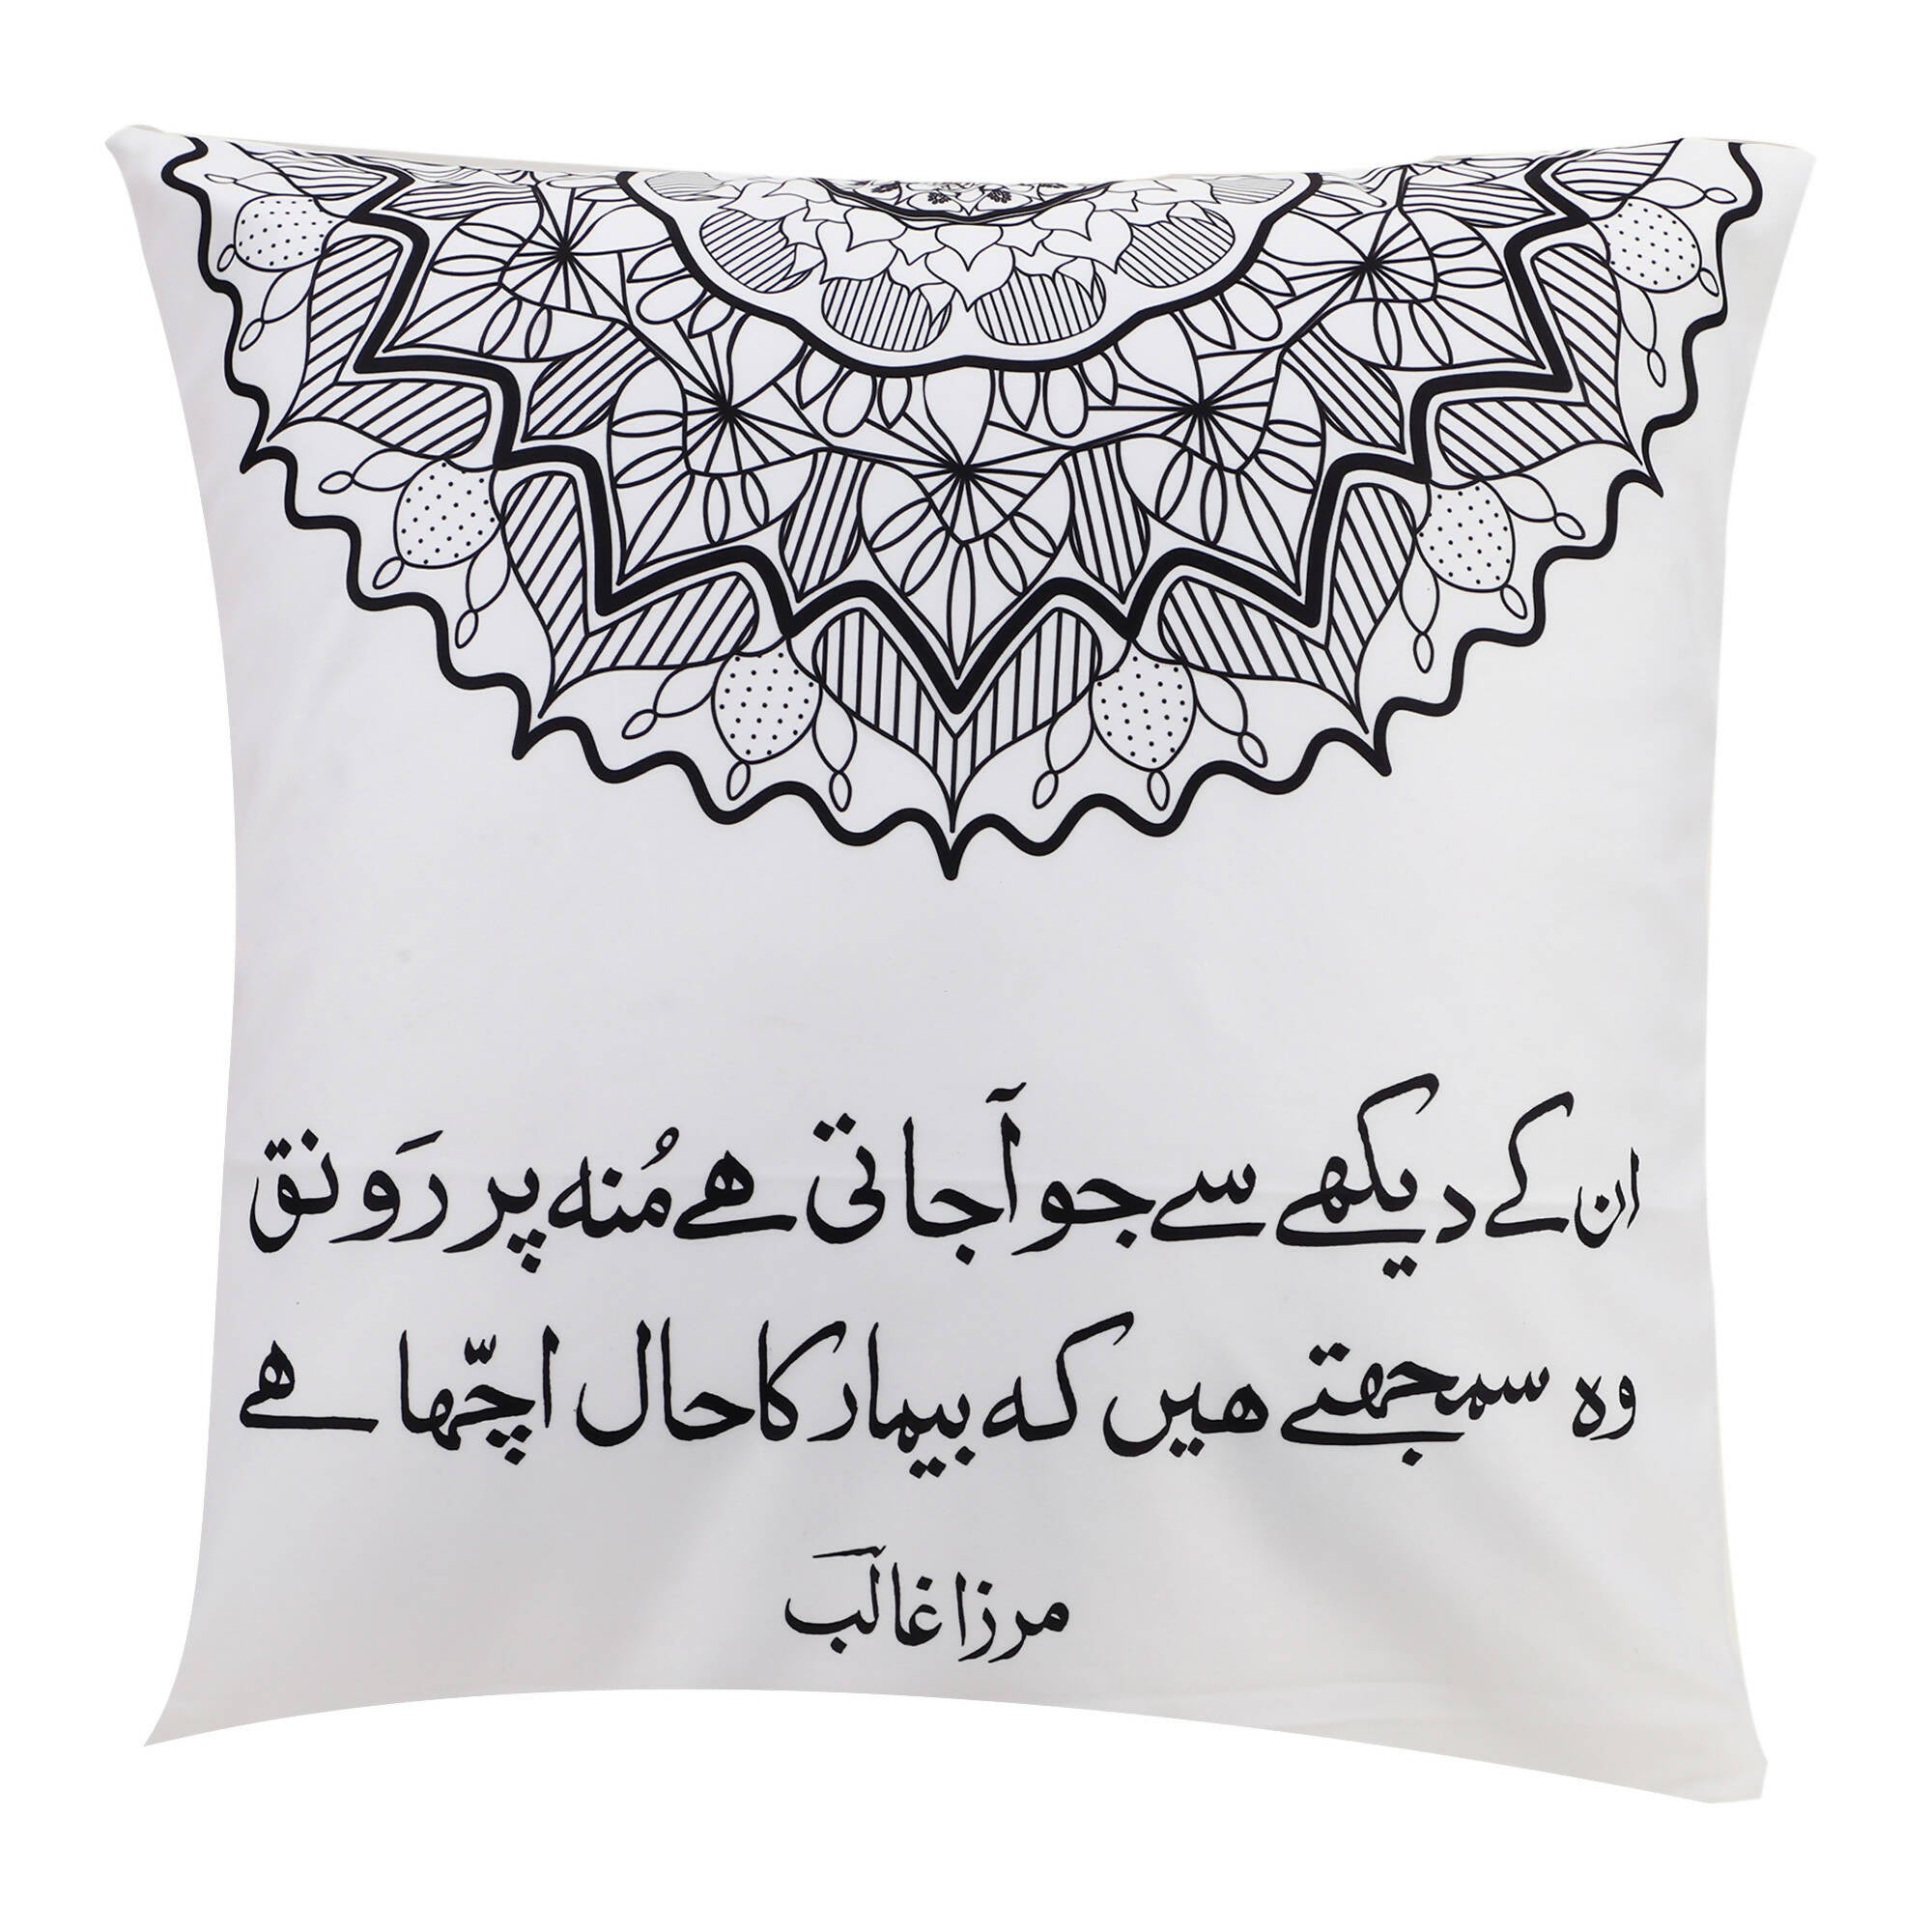 Books etc Ghalib Cushion Cover 1 ( 16" x 16" ) Urdu text